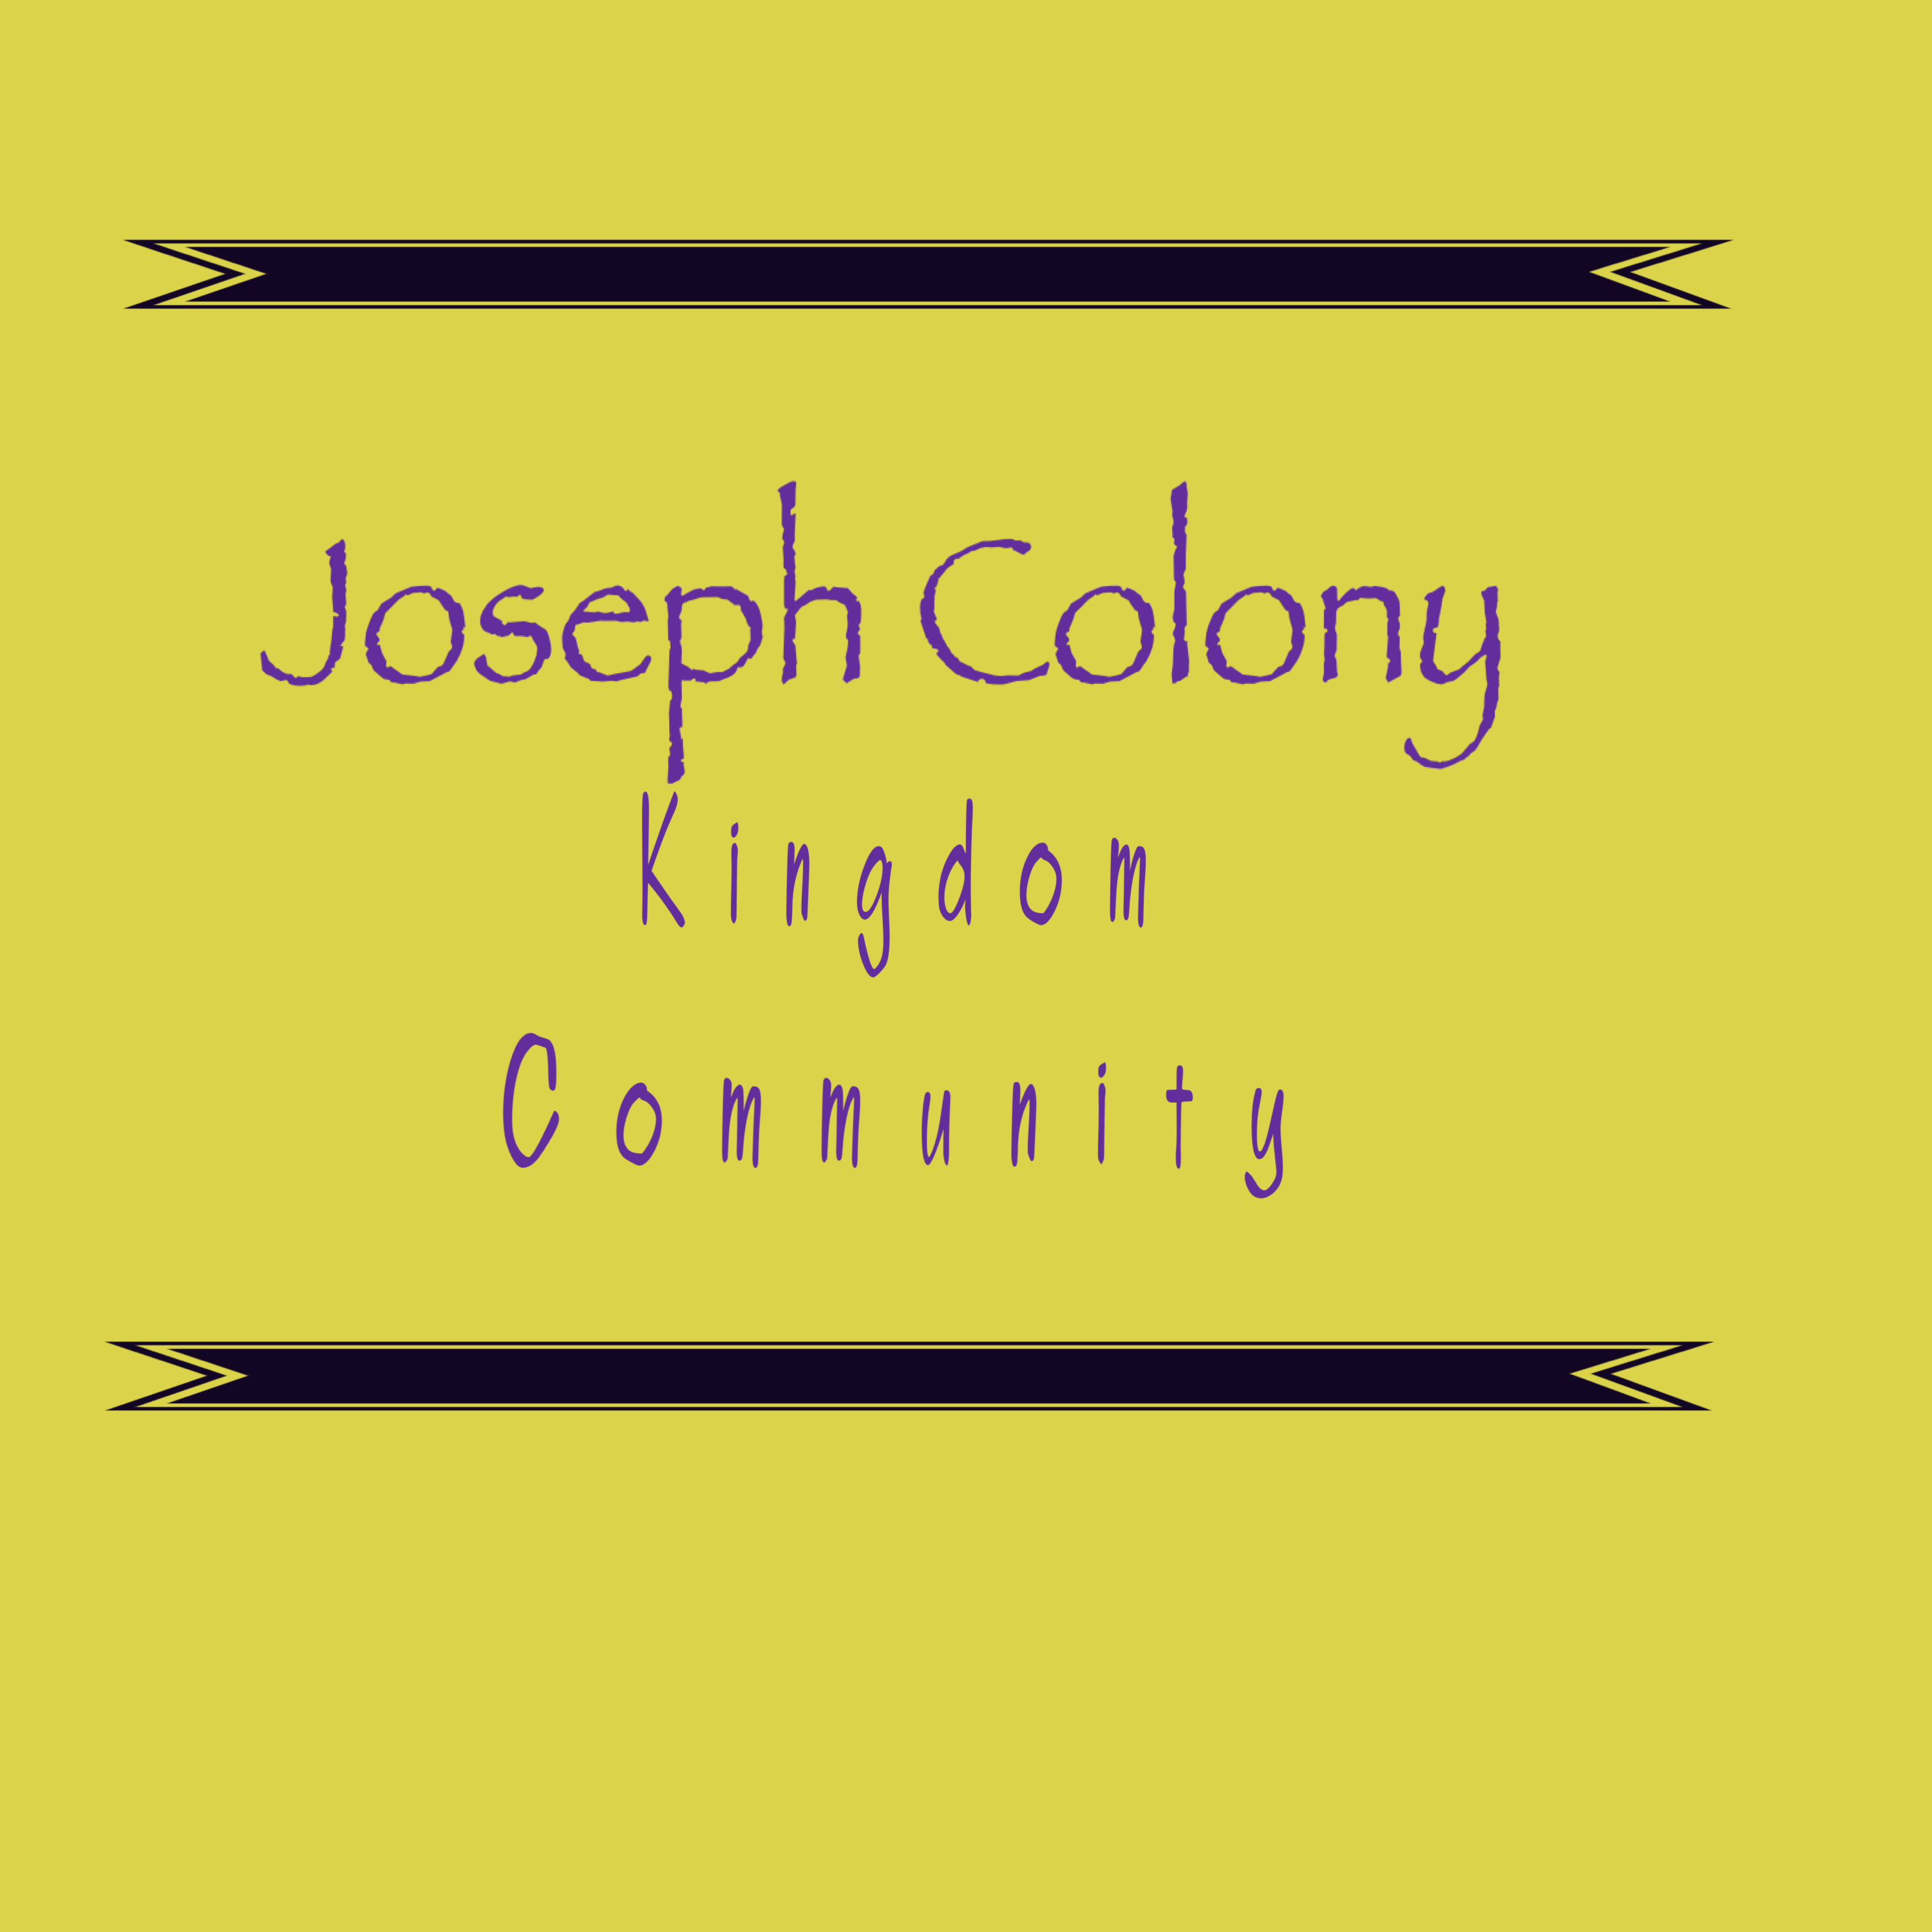 The josephcolony's Podcast